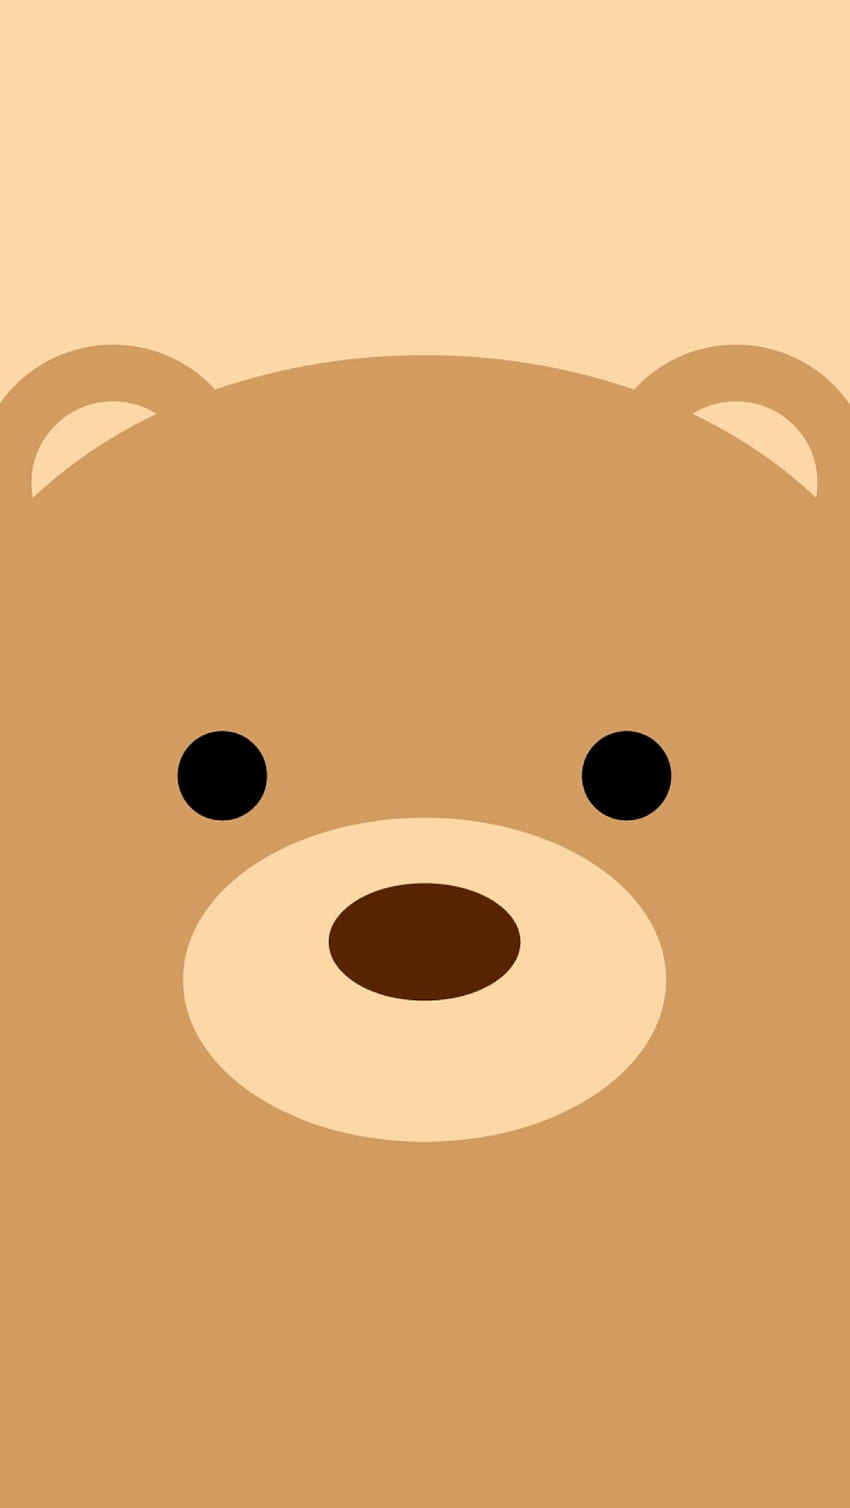 Cute bear for iphone - Búsqueda de Google, Teddy Bear Face HD ...